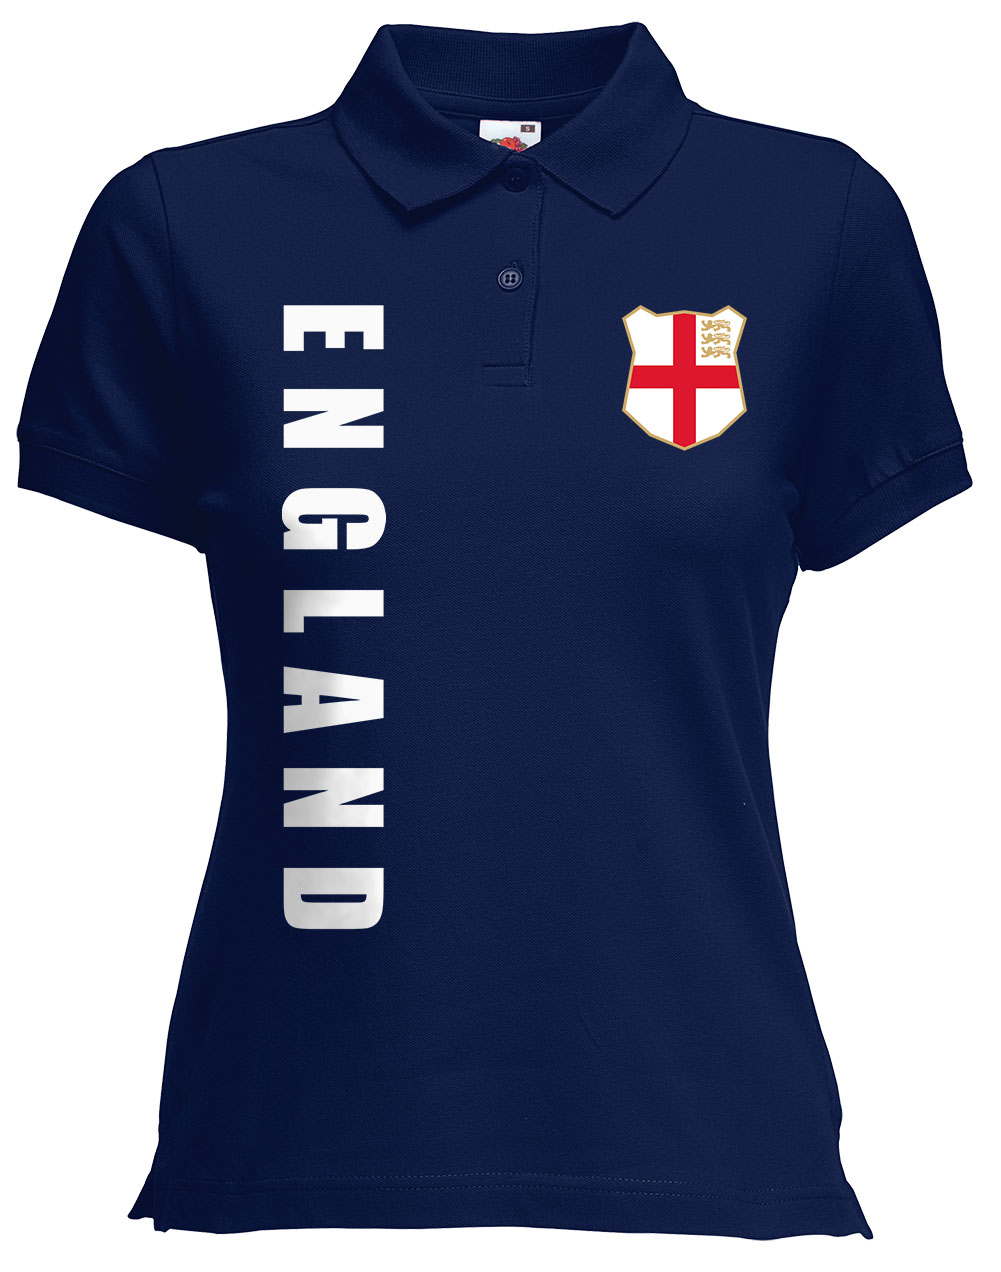 England Damen Trikot Fanshirt Polo-Shirt WM 2018 Name Nummer 